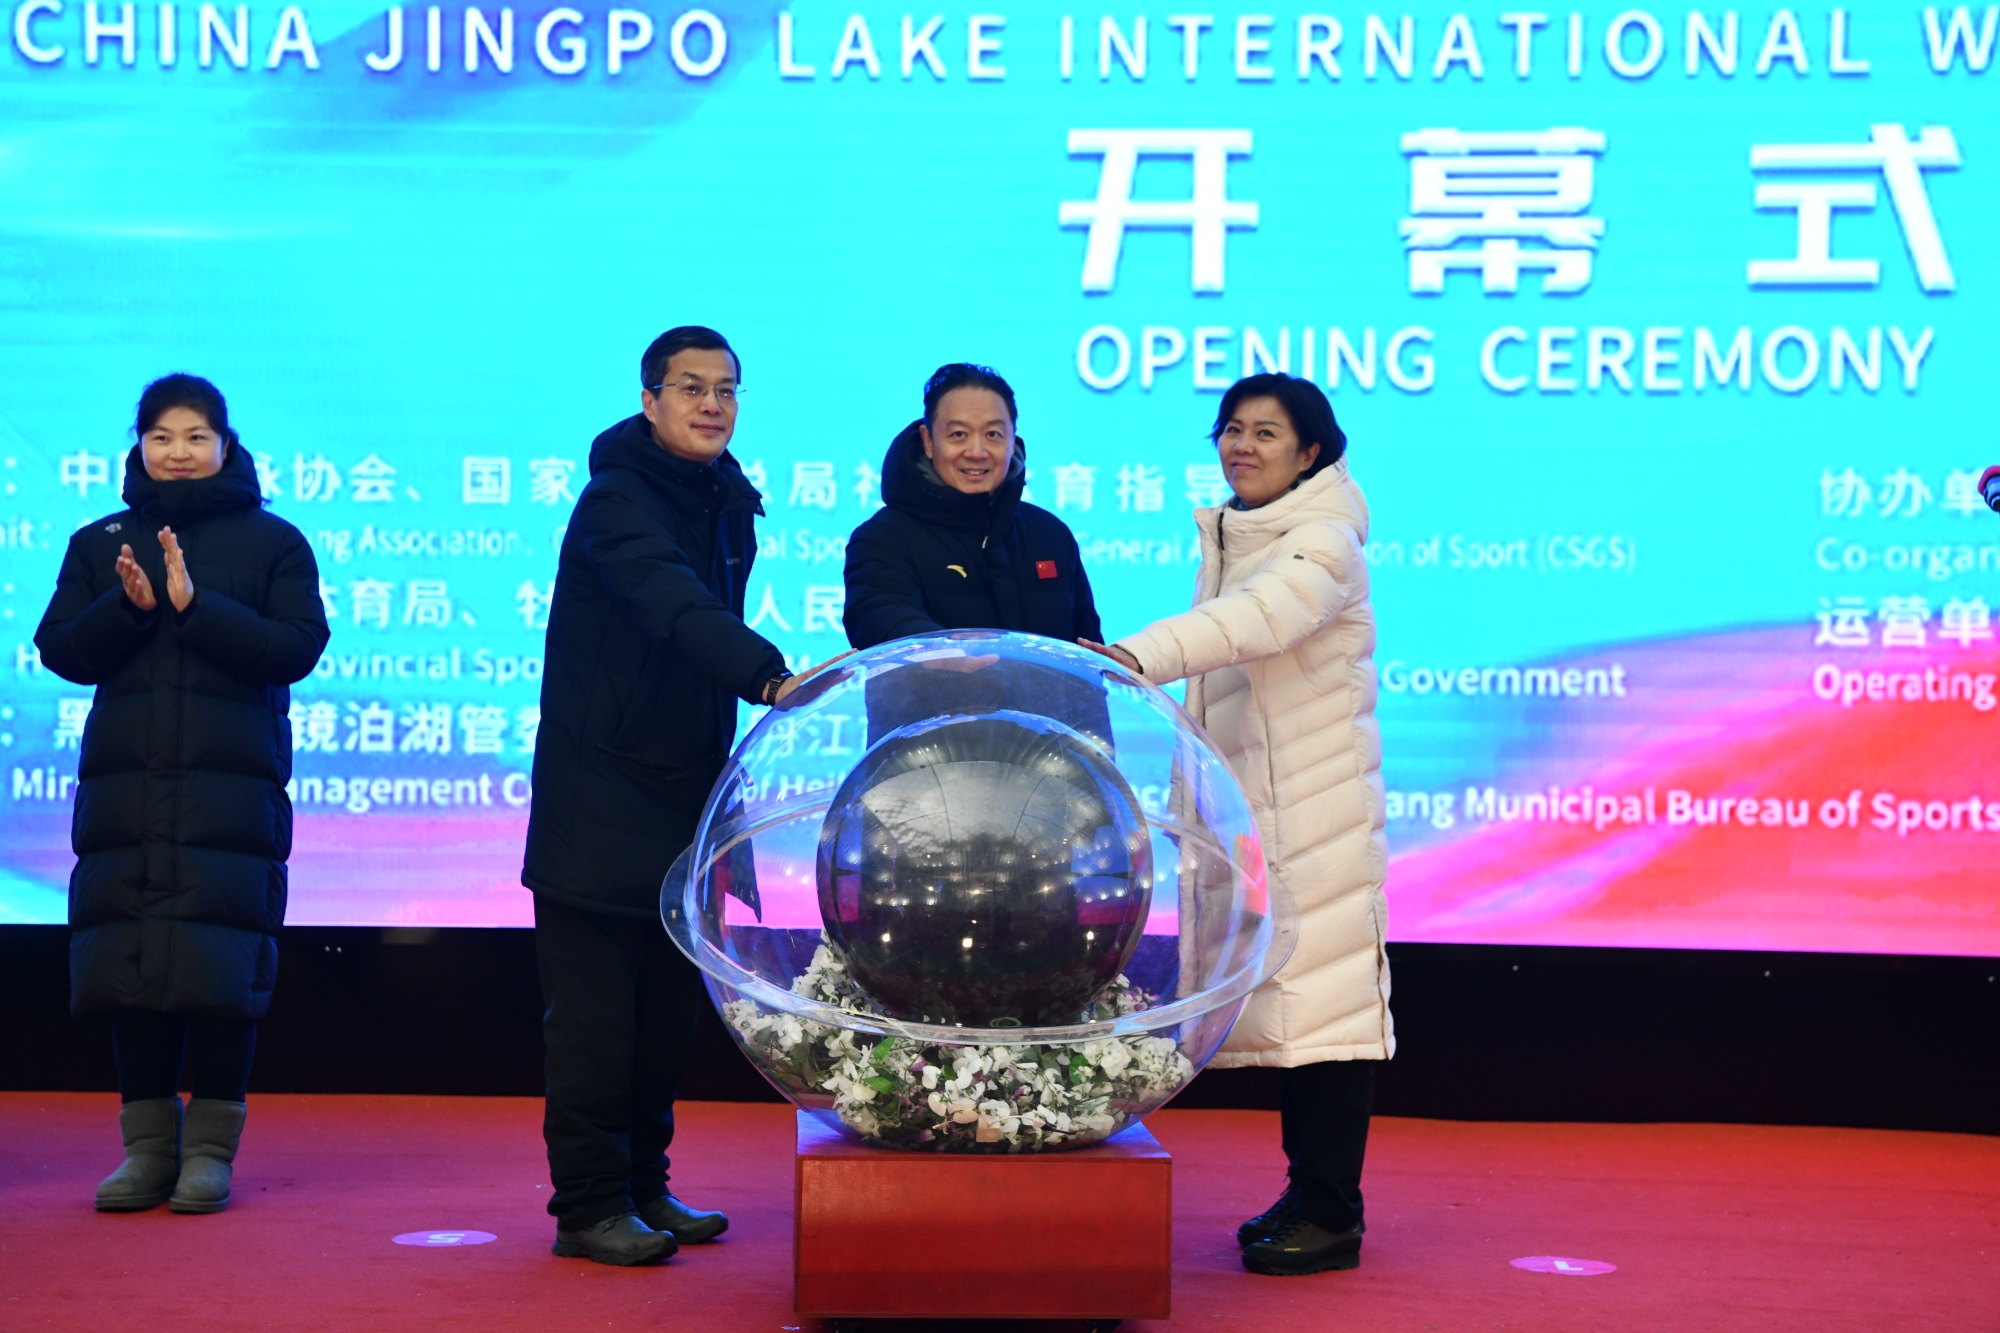 第二届中国镜泊湖国际冬泳挑战赛开赛